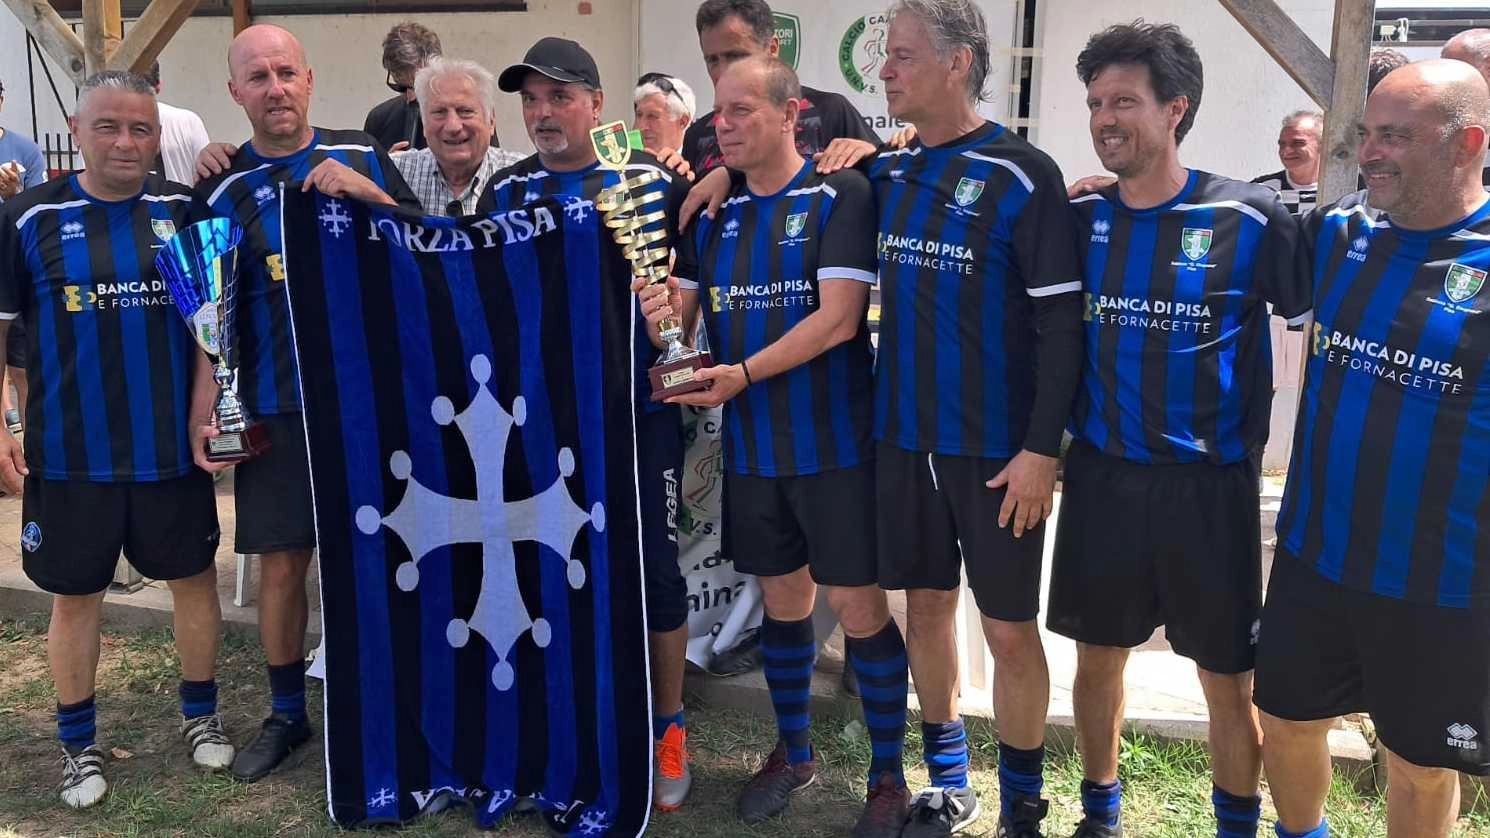 Si conclude a Viareggio il Campionato di Calcio Camminato Unvs con la vittoria degli ex giocatori del Pisa Sporting Club nella categoria Over 50. La squadra si è distinta per il percorso netto e la solidità difensiva, confermando il talento dei giocatori.